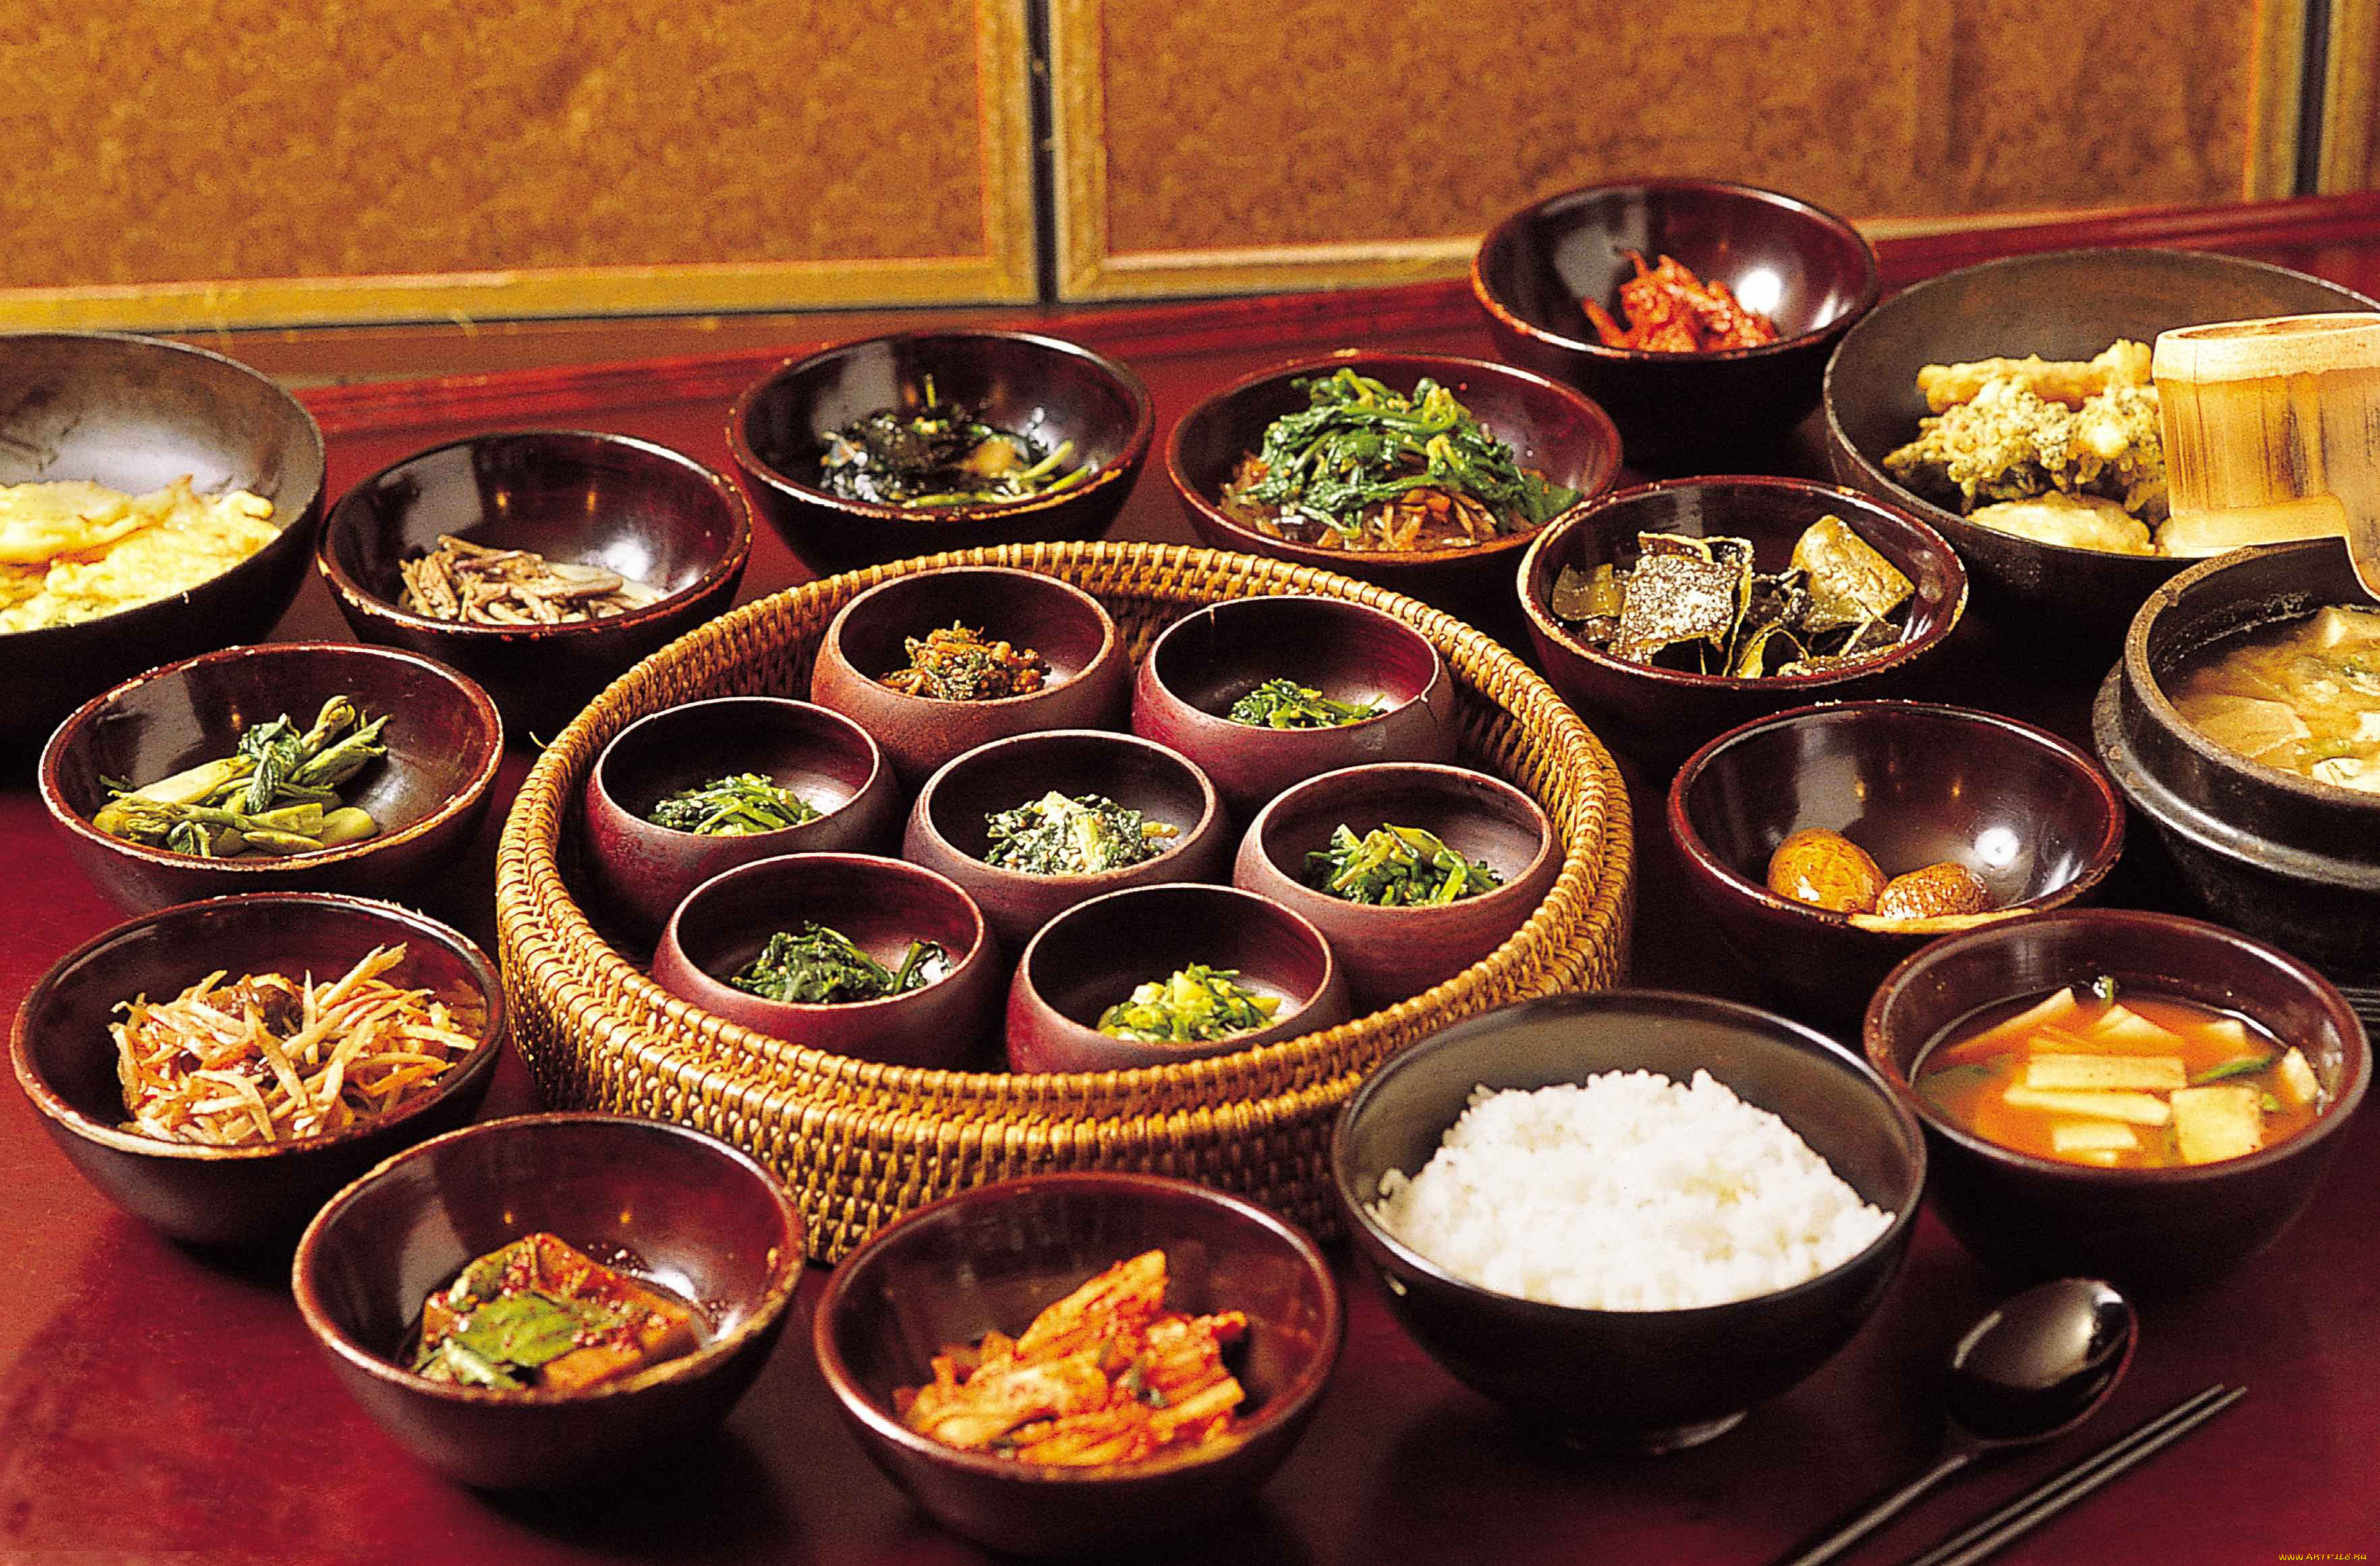 еда, разное, корейская, кухня, рис, овощи, мясо